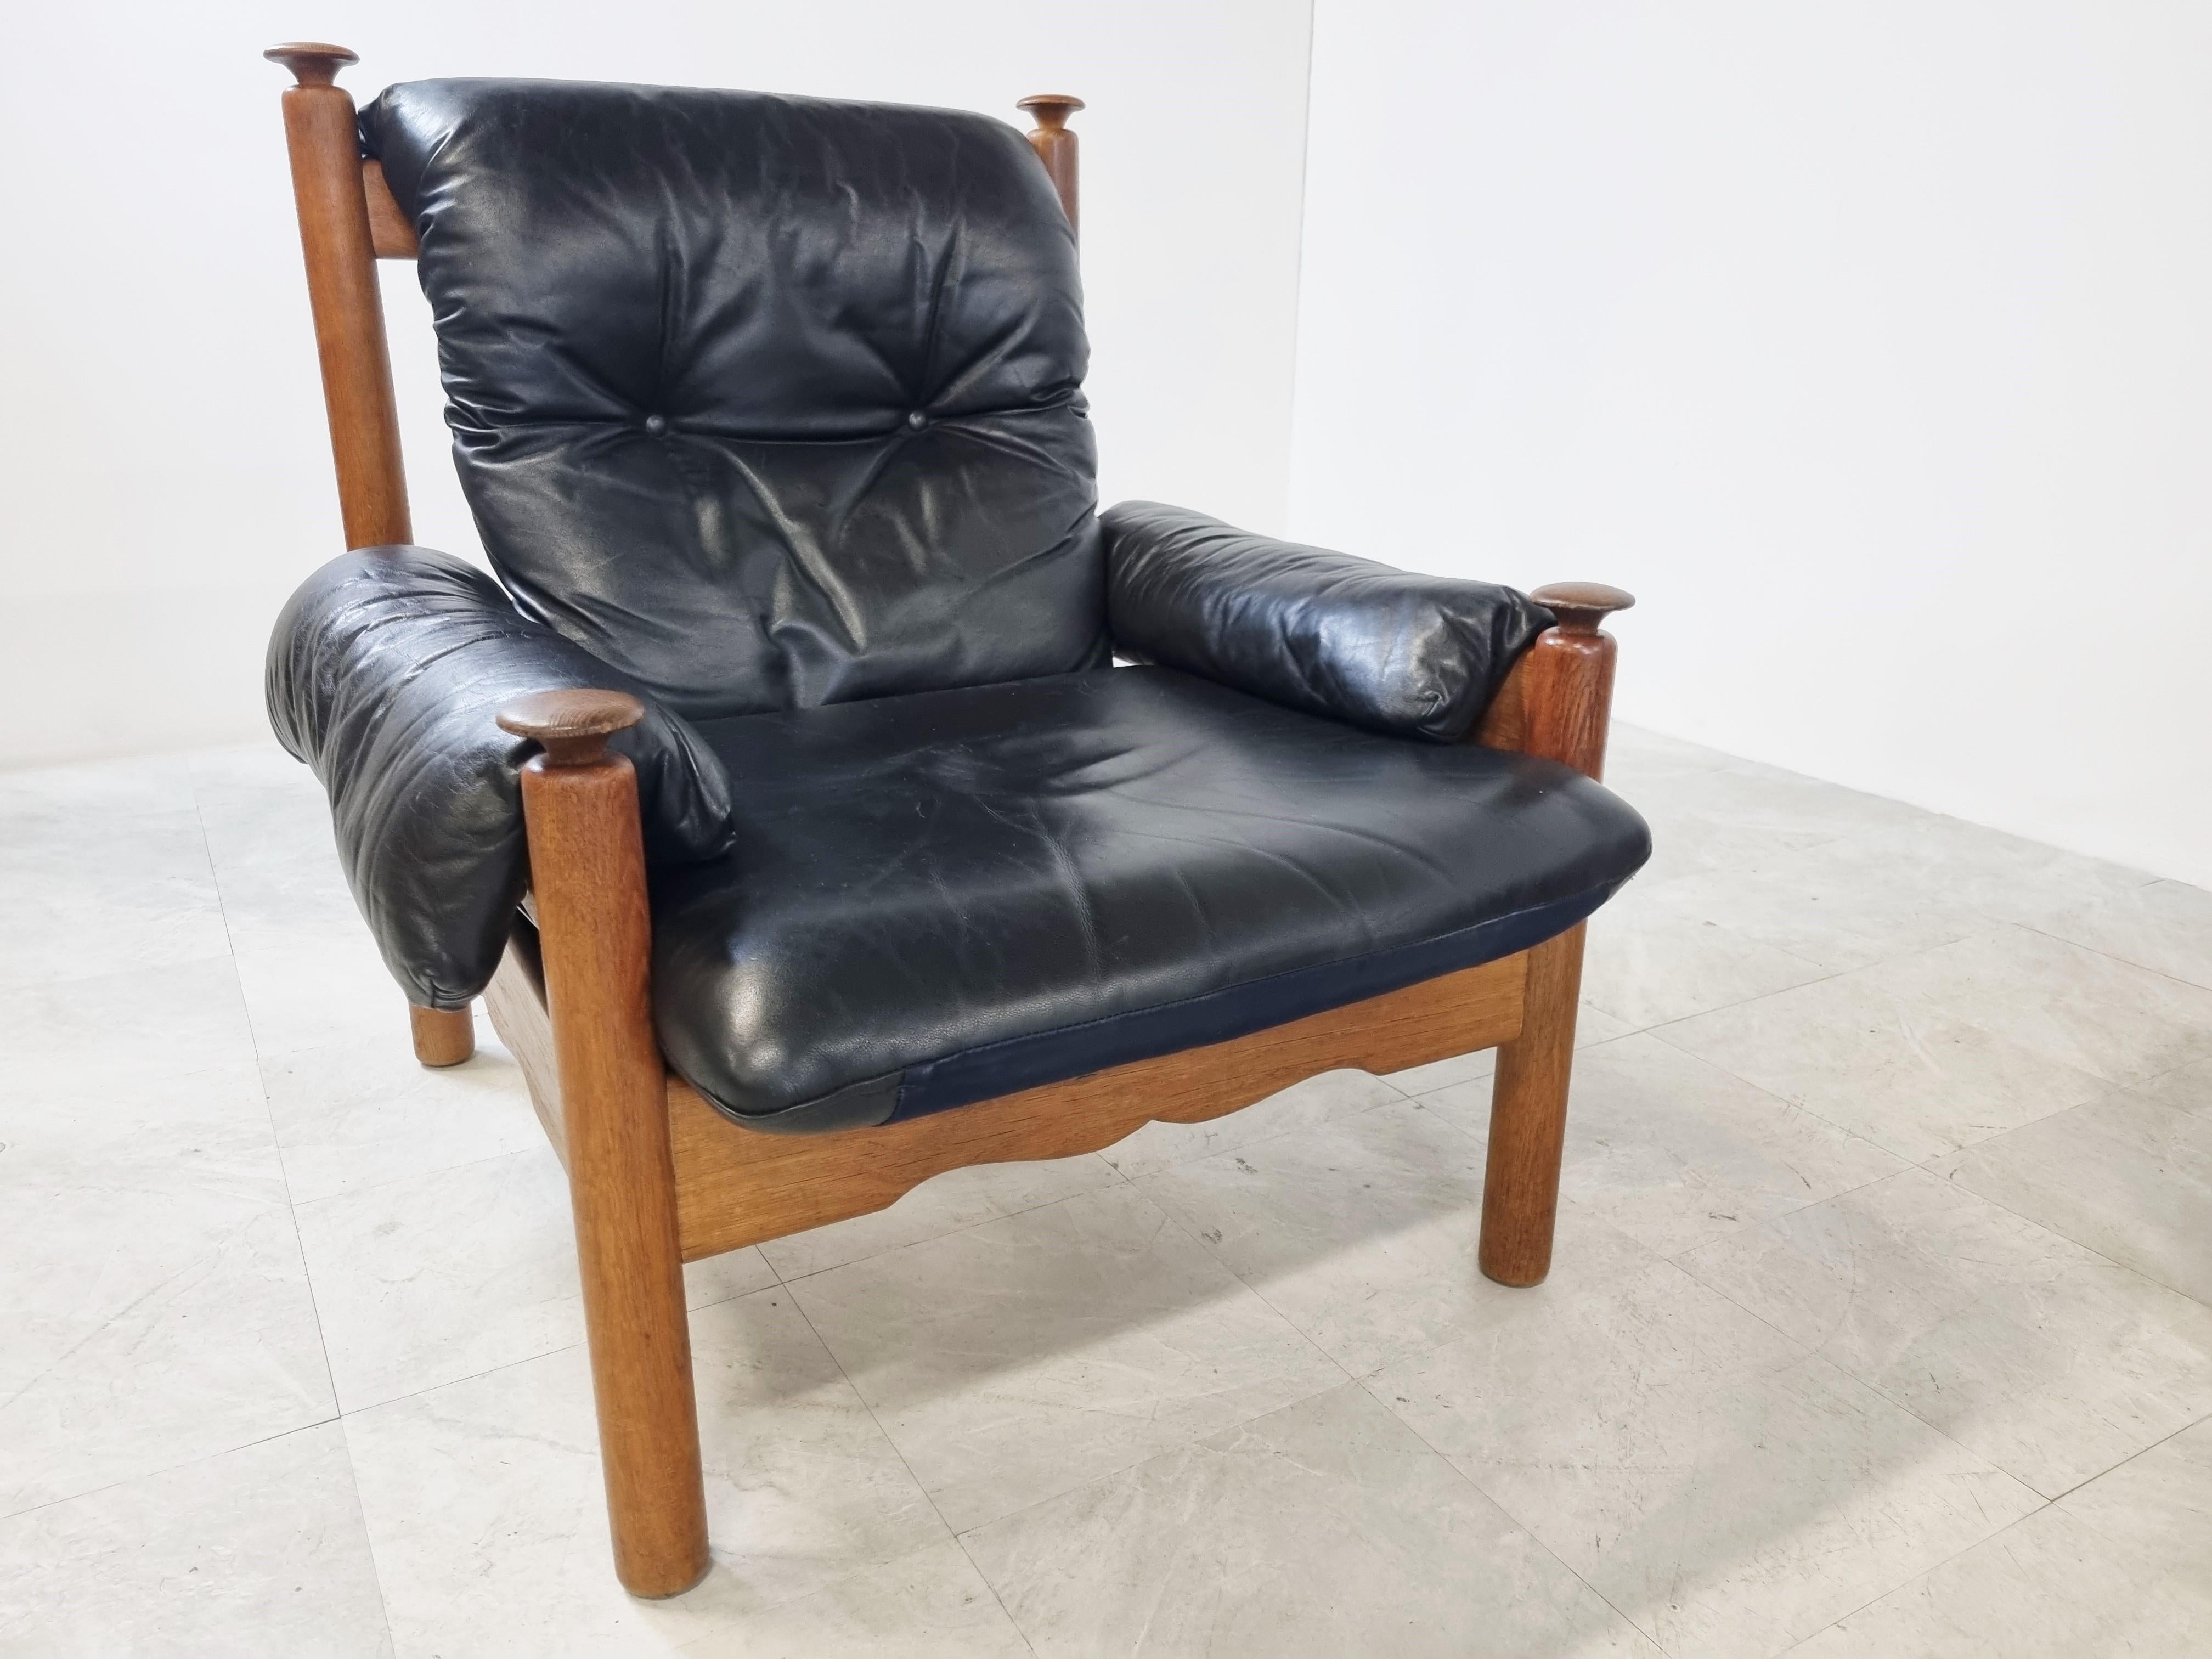 Vintage Brutalist Dreisitzer-Sofa mit passendem Sessel in Eiche und schwarzem Leder.

Die Sofas sind sehr bequem und haben ein schönes brutalistisches Design.

Guter Zustand.

1970er Jahre - Deutschland

Abmessungen:
3-Sitzer:
Höhe: